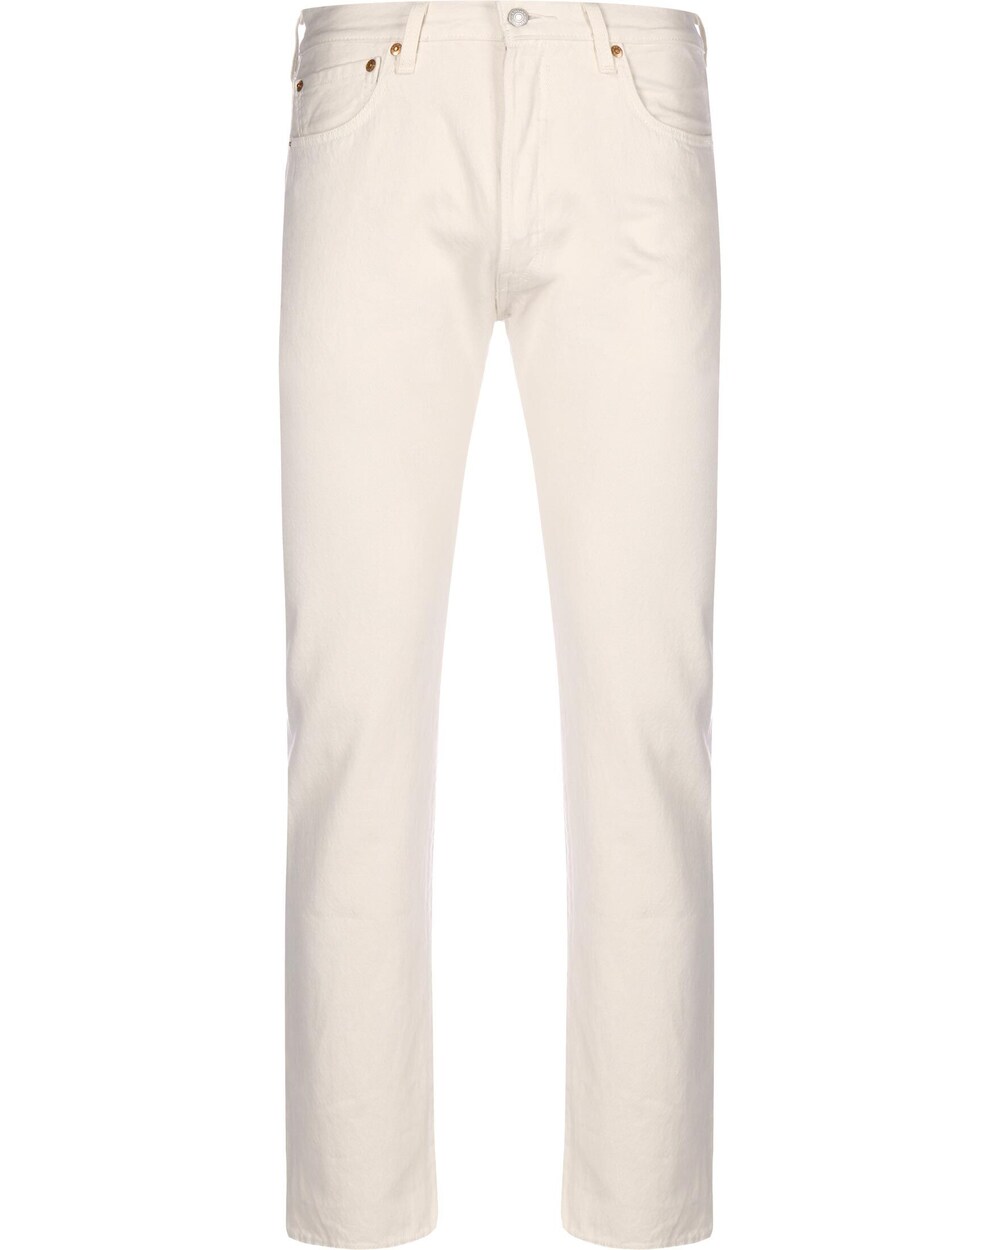 Обычные джинсы LEVIS 501, белый